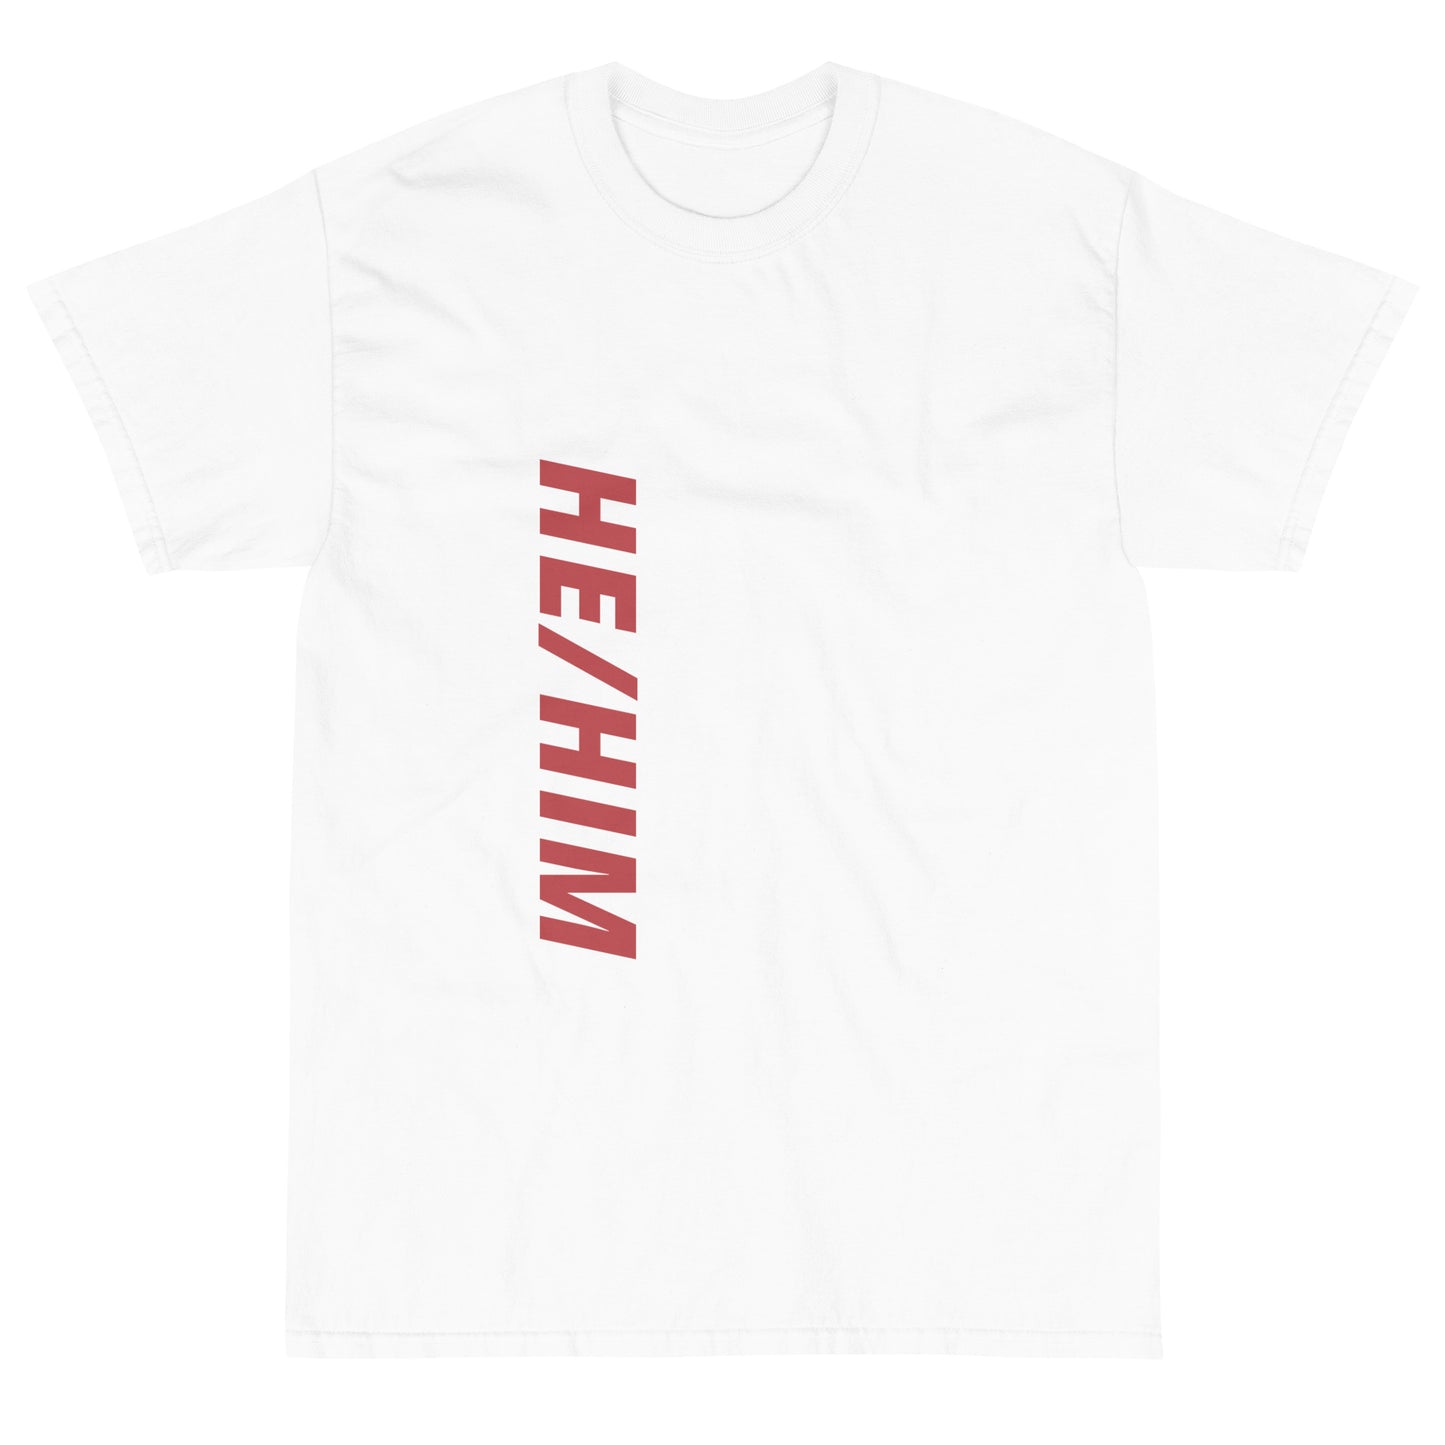 "He/Him" Short Sleeve T-Shirt